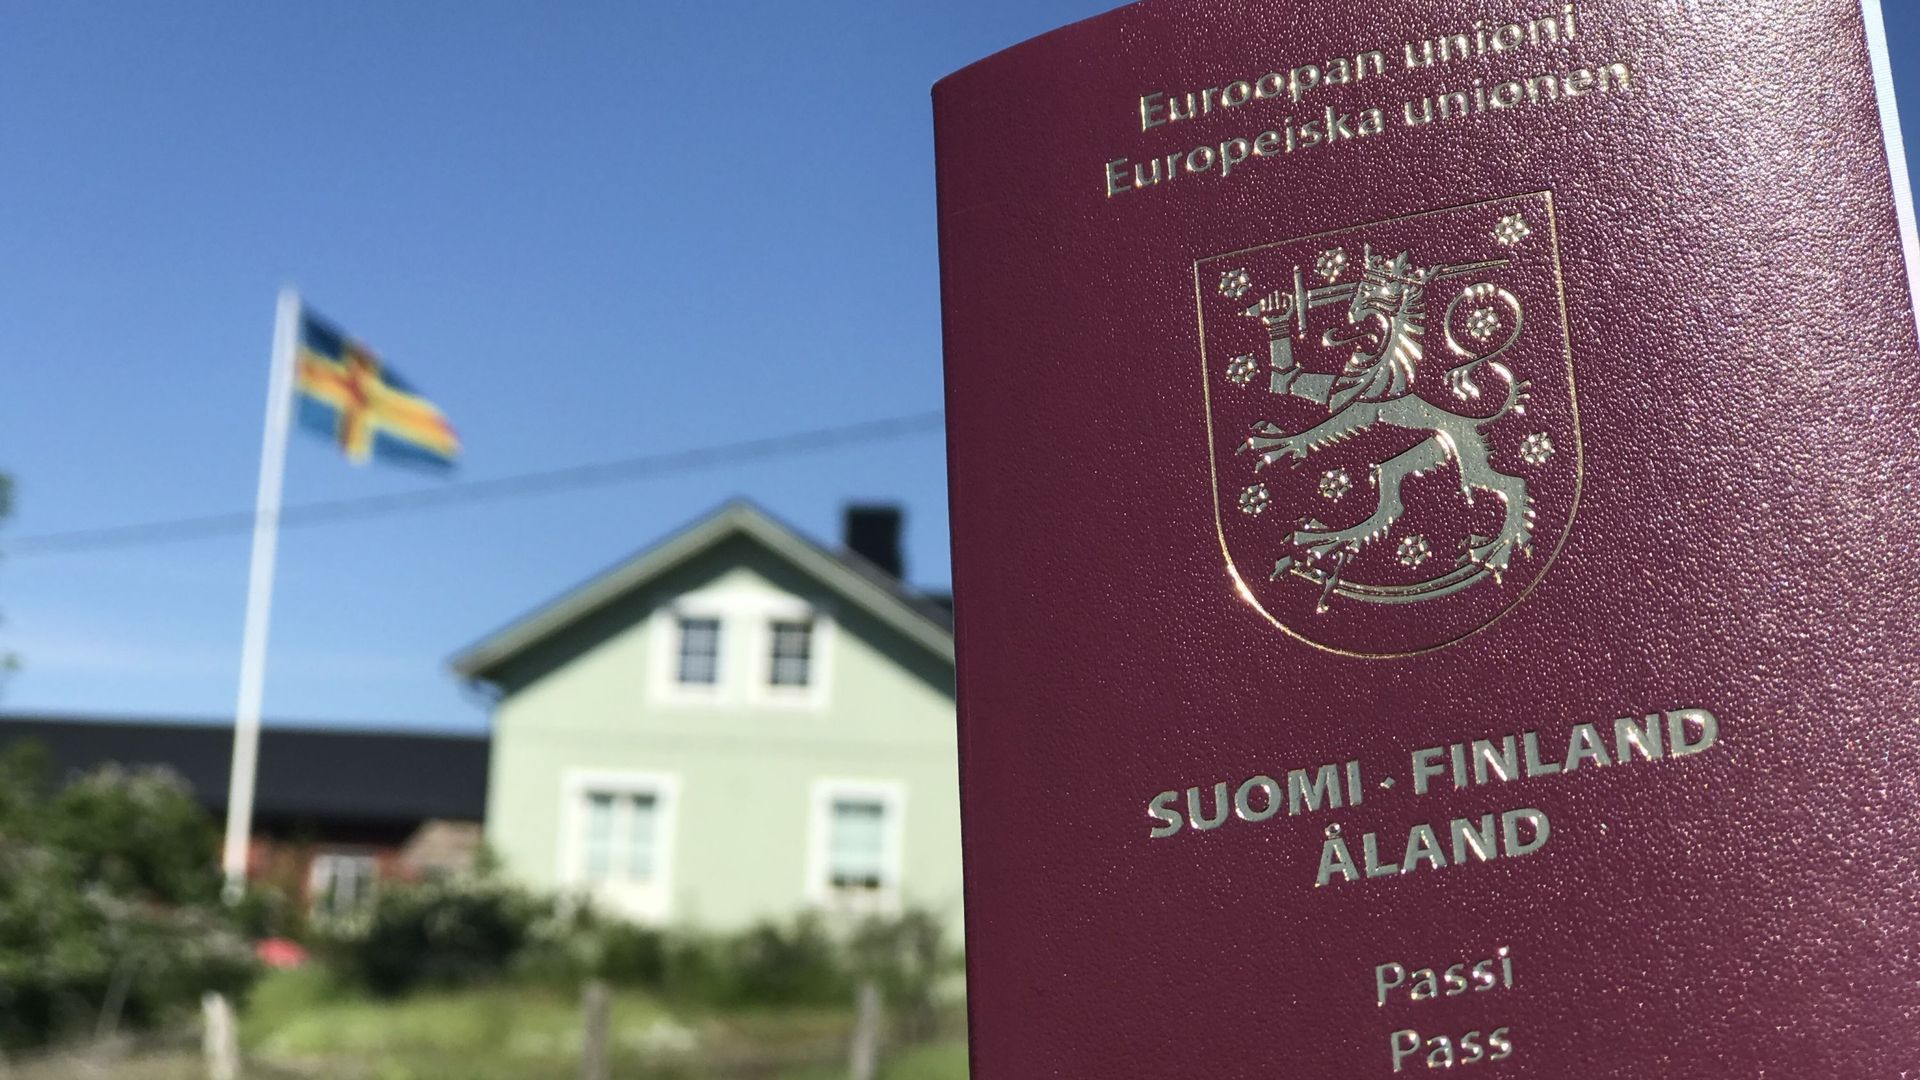 Le passeport spécifique des Alandais indique leur citoyenneté à côté du mot Finlande